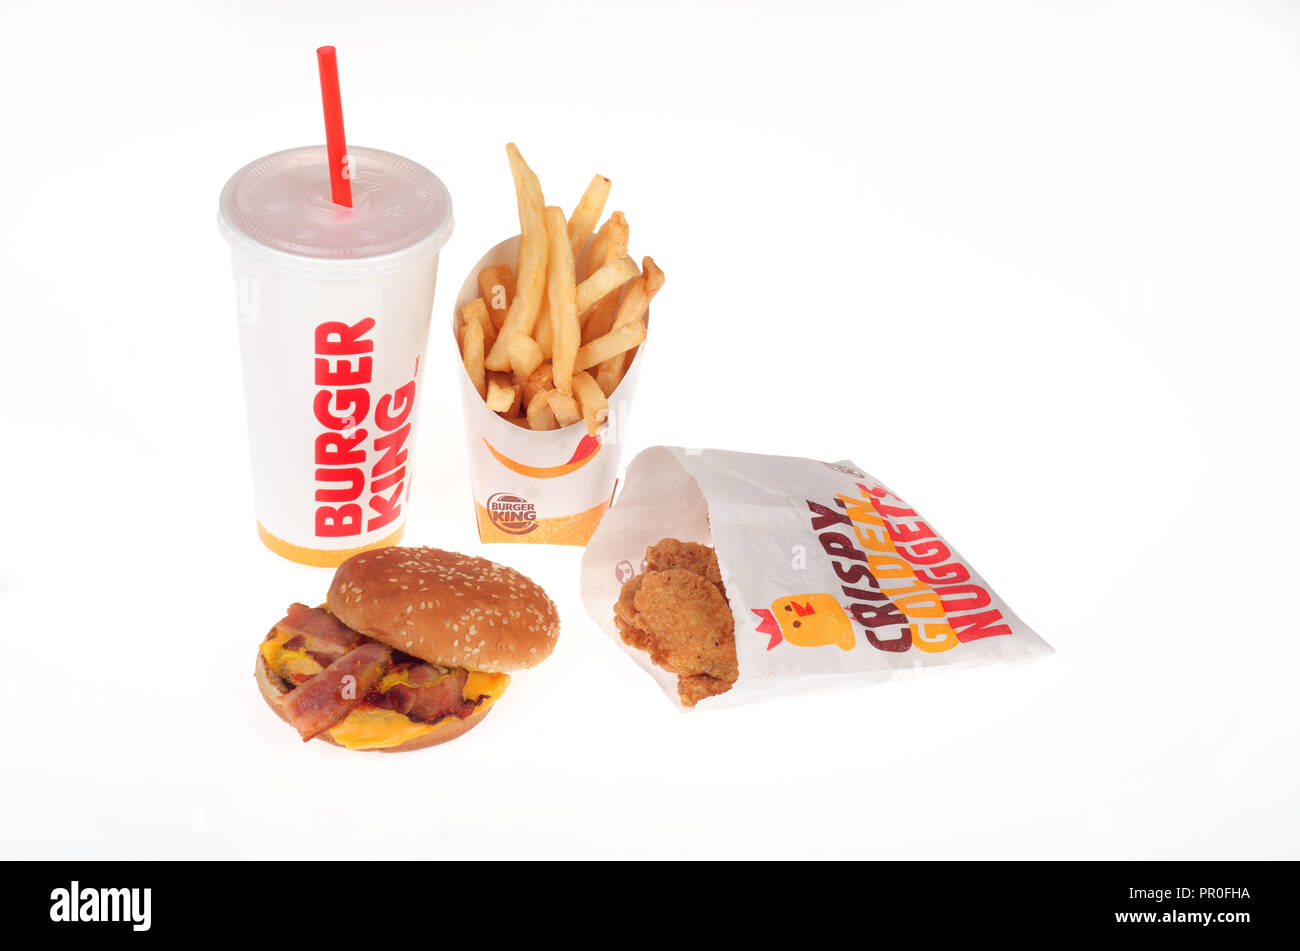 Burger King repas d'un bacon cheeseburger, frites, nuggets de poulet et des boissons gazeuses Banque D'Images